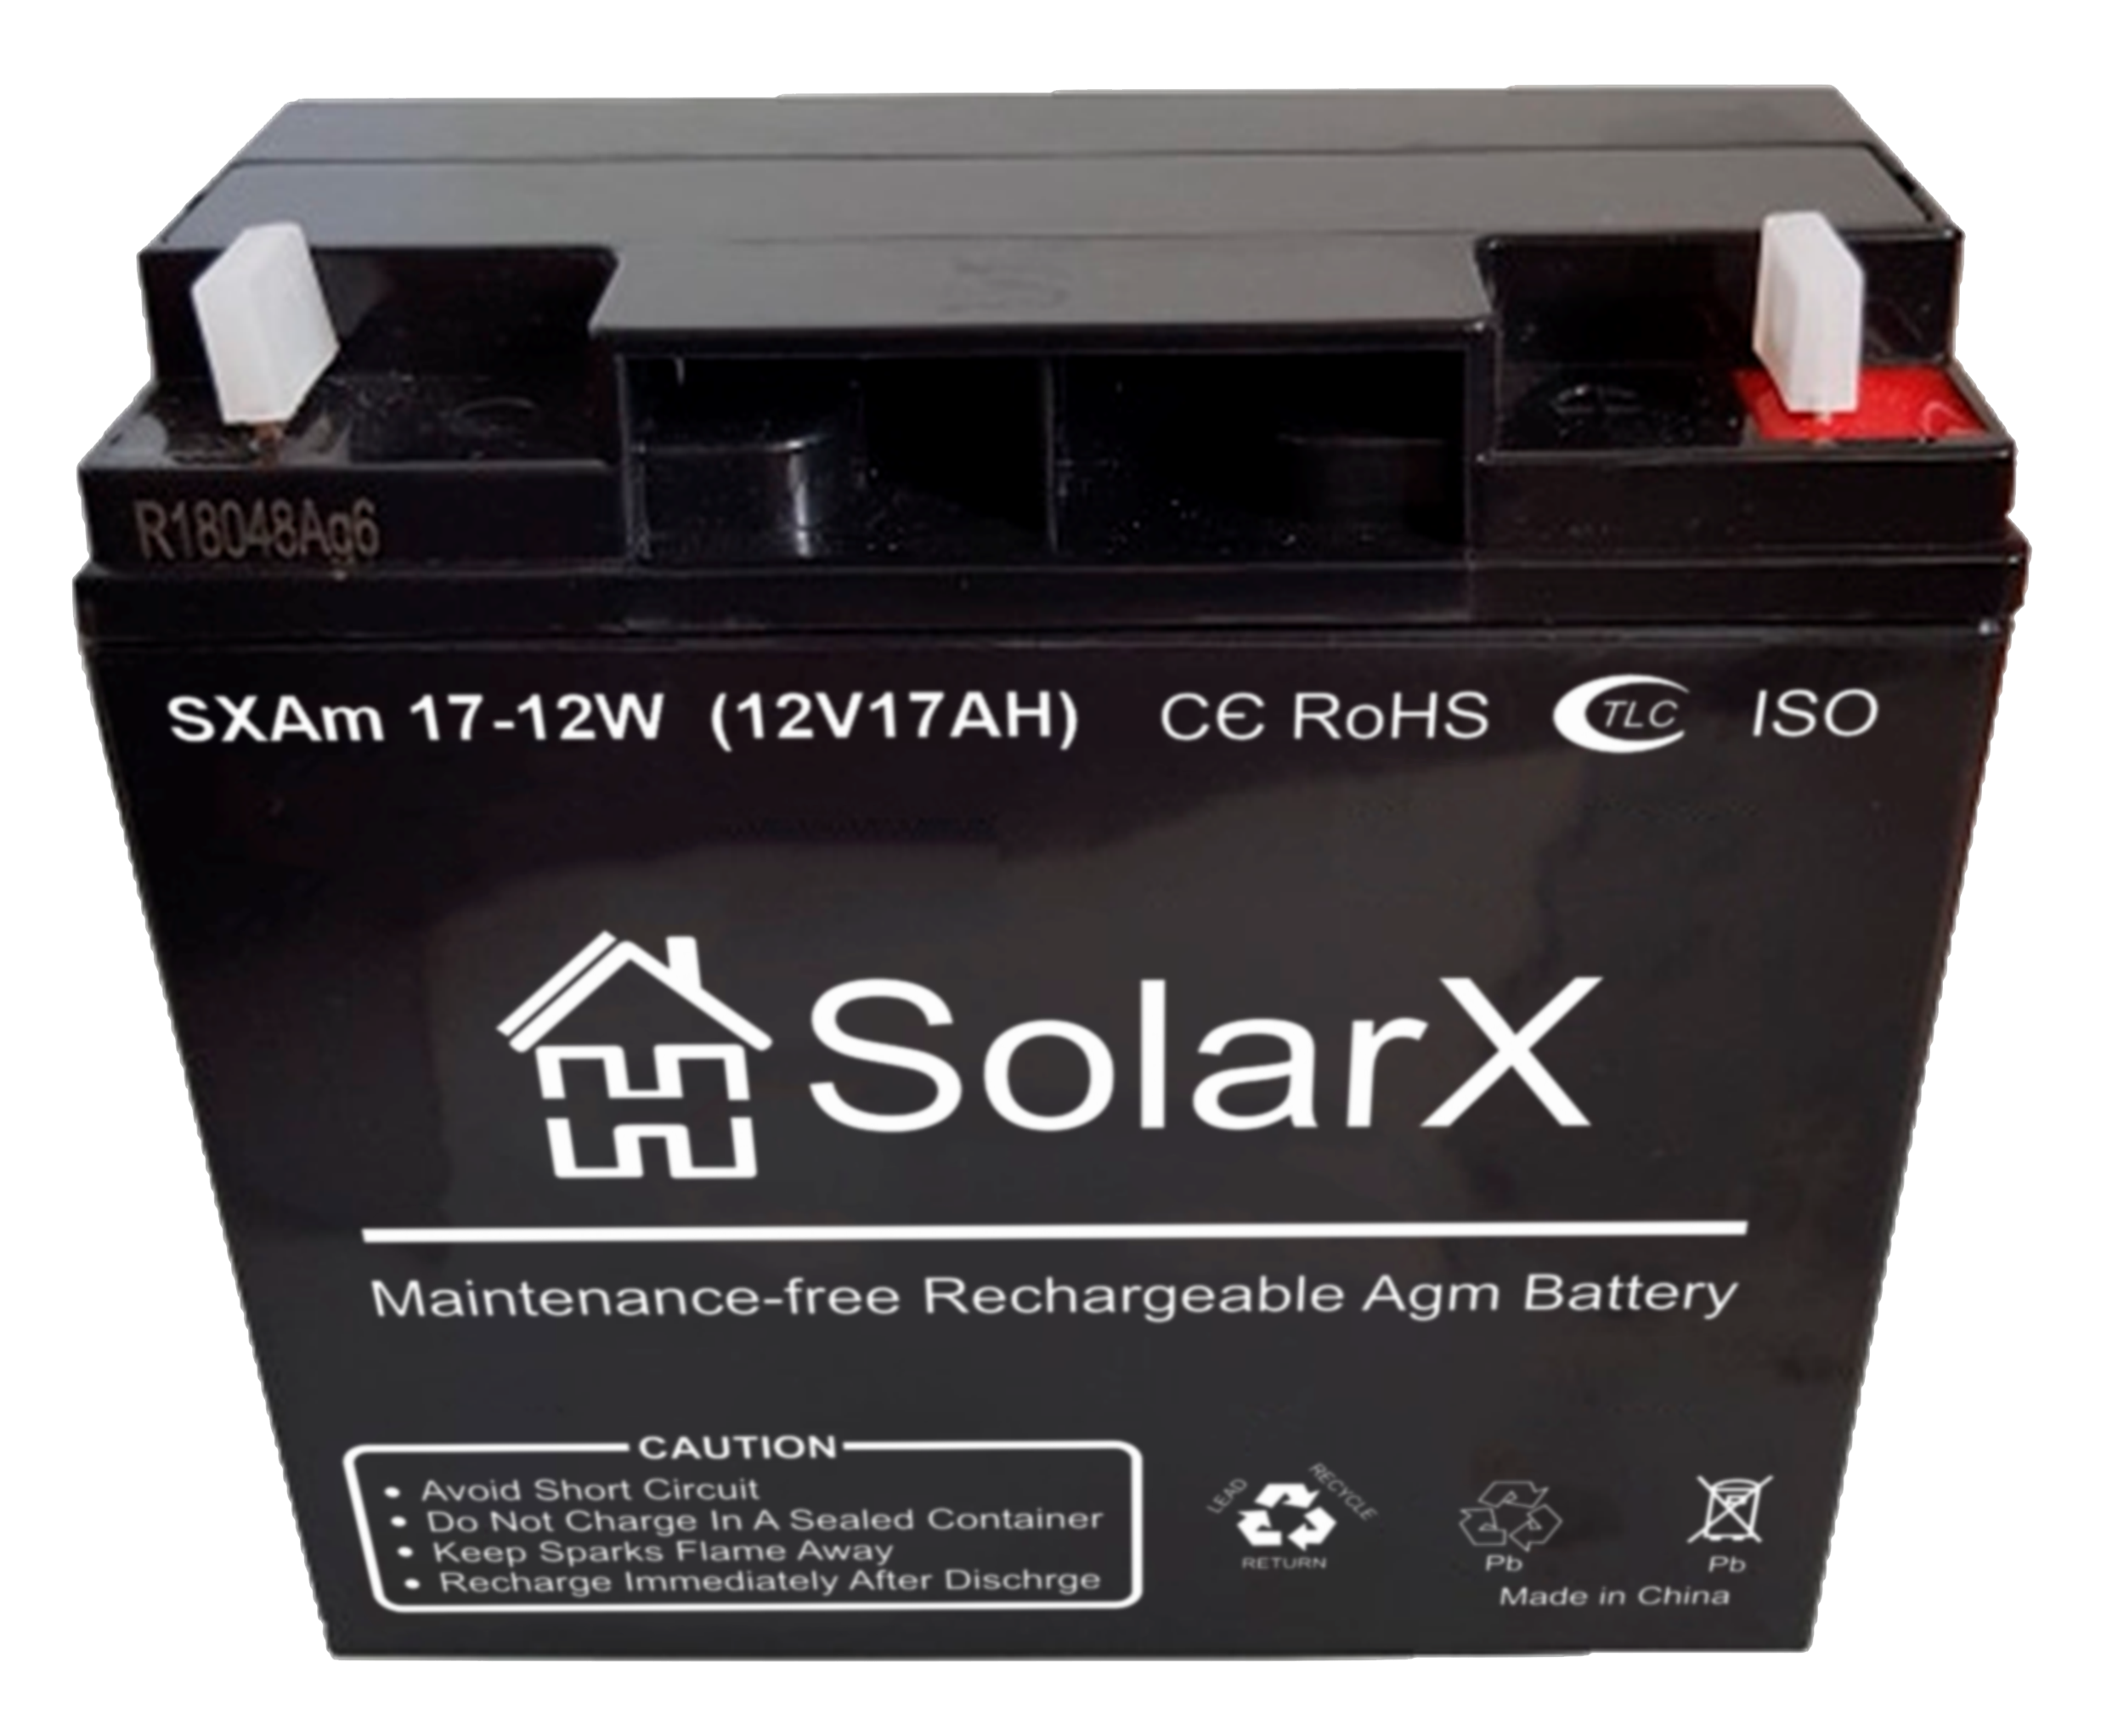 Solarx sxam 17 12w